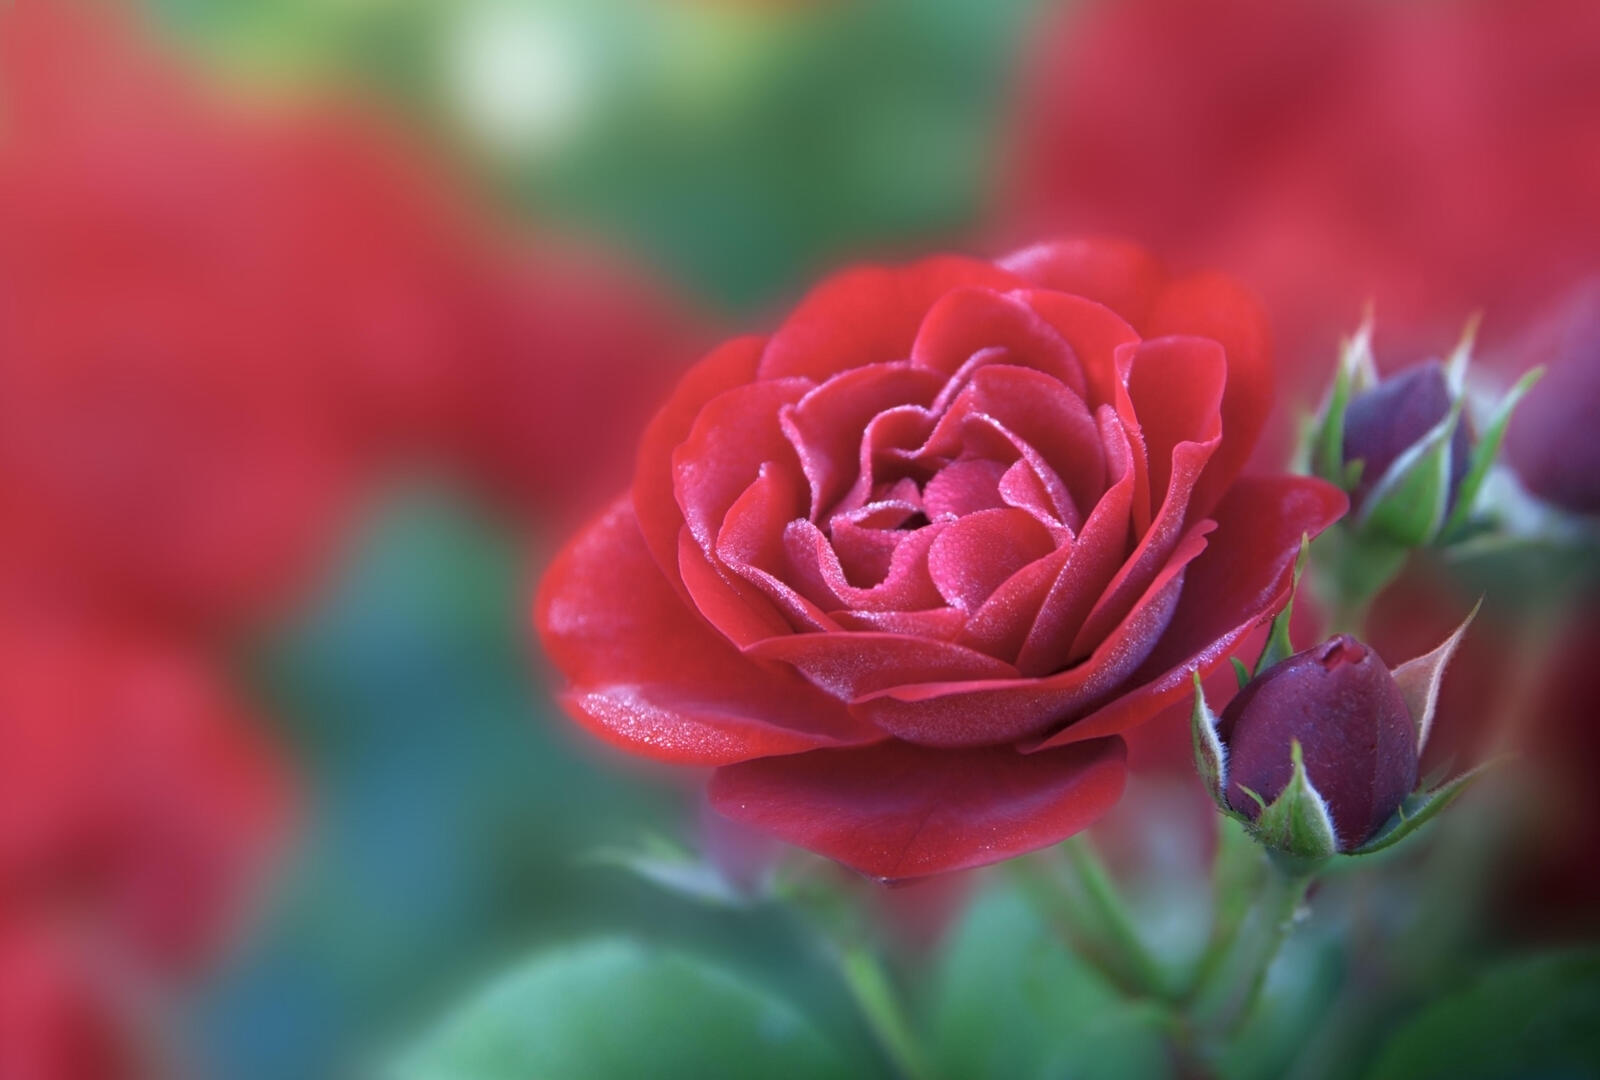 Обои роза красный цветок флора на рабочий стол